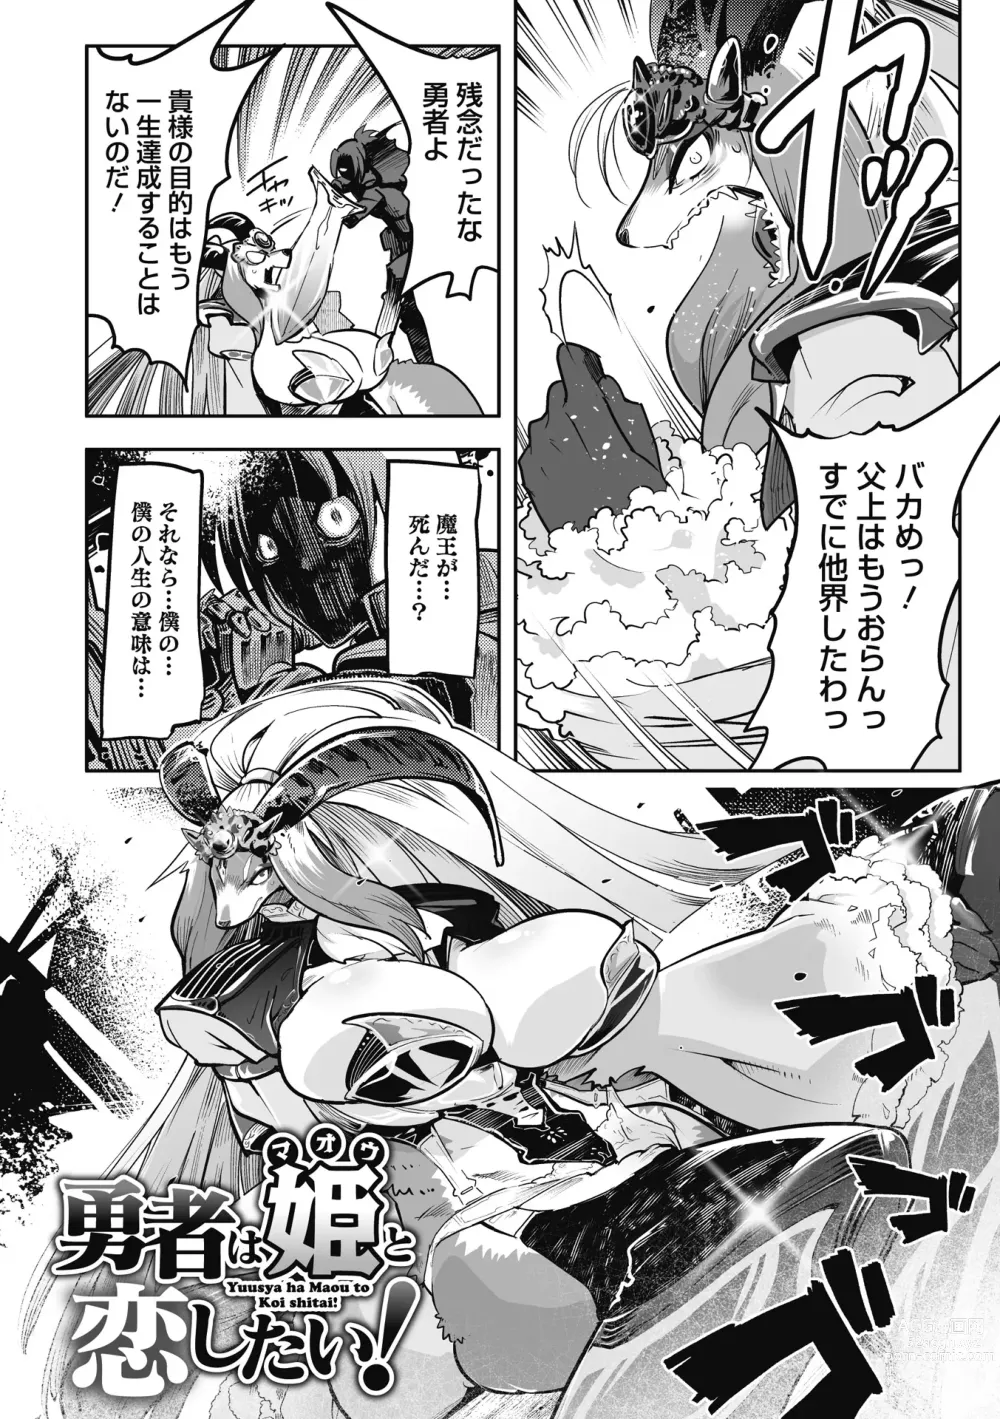 Page 4 of manga Kemono to Koishite Nani ga Warui!